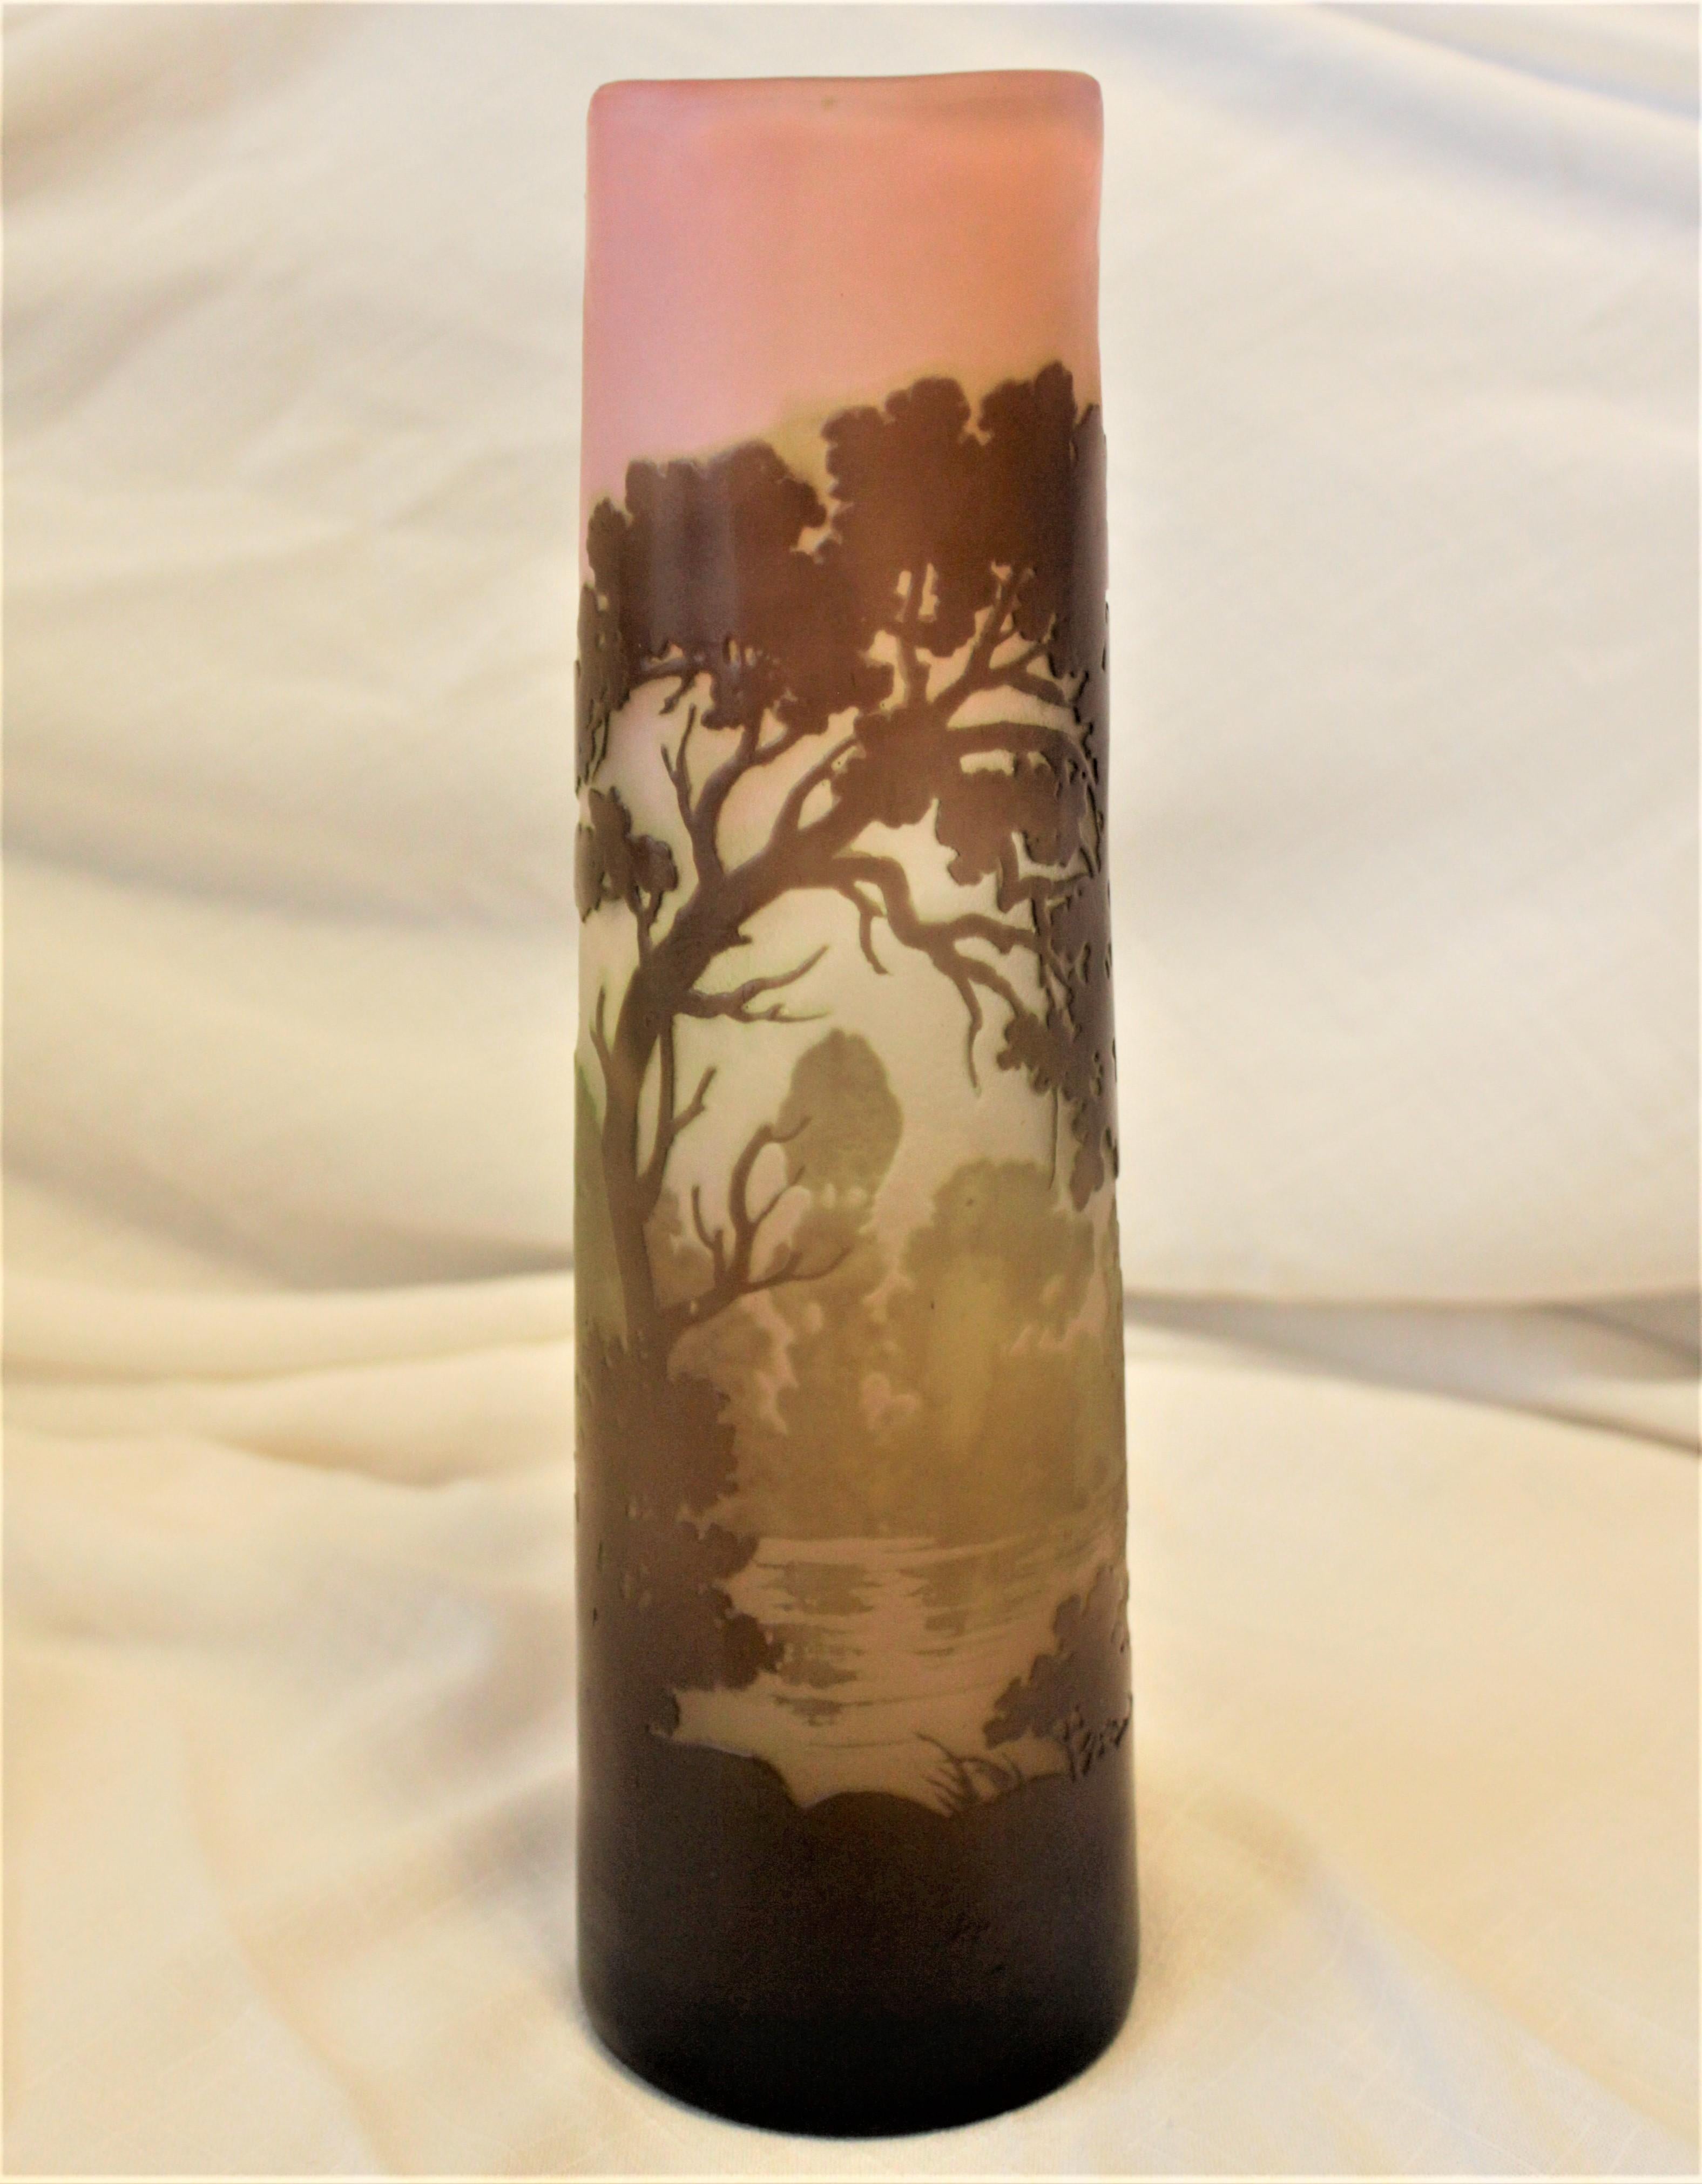 Ce vase antique signé Galle a été fabriqué en France vers 1900 dans le style Art nouveau. Le vase est fait de plusieurs couches de verre coloré qui ont été gravées, coupées et polies pour révéler un paysage de campagne avec un ruisseau en